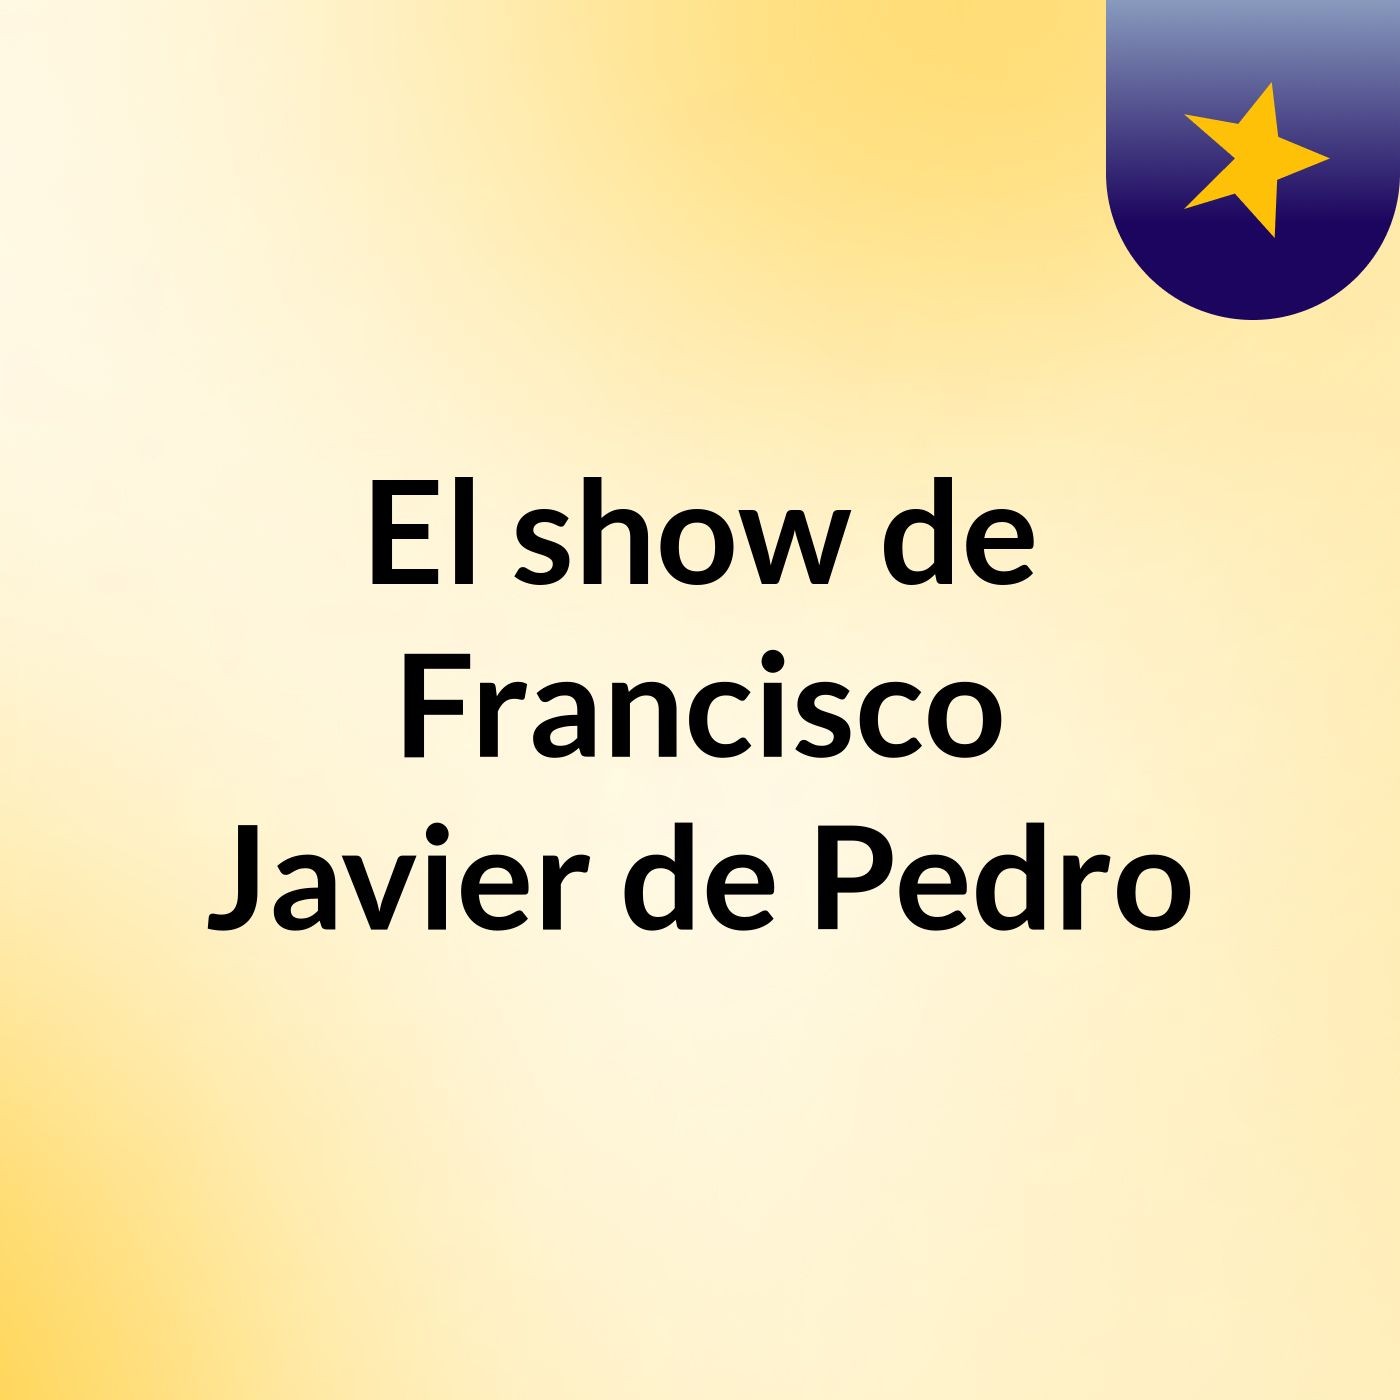 El show de Francisco Javier de Pedro